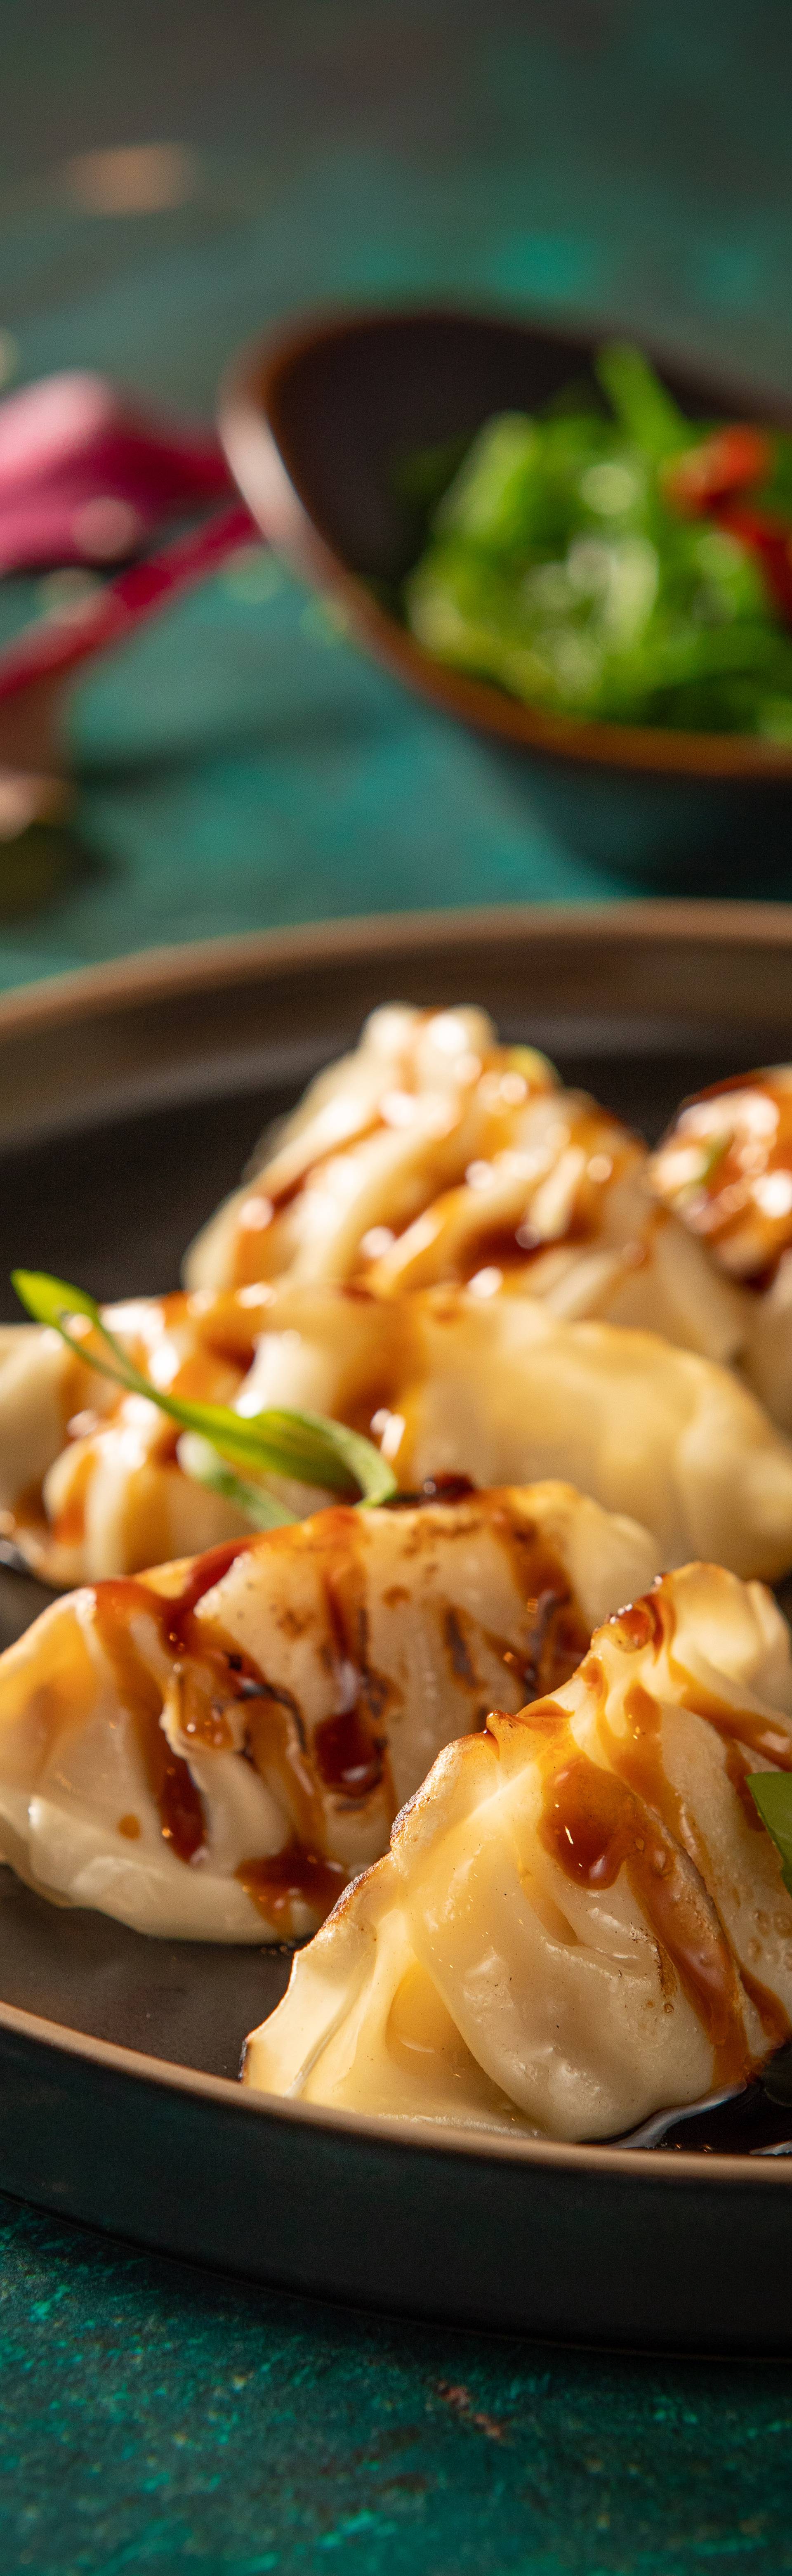 Novi asian fusion restoran u Zagrebu nudi azijske klasike u ugodnom ambijentu